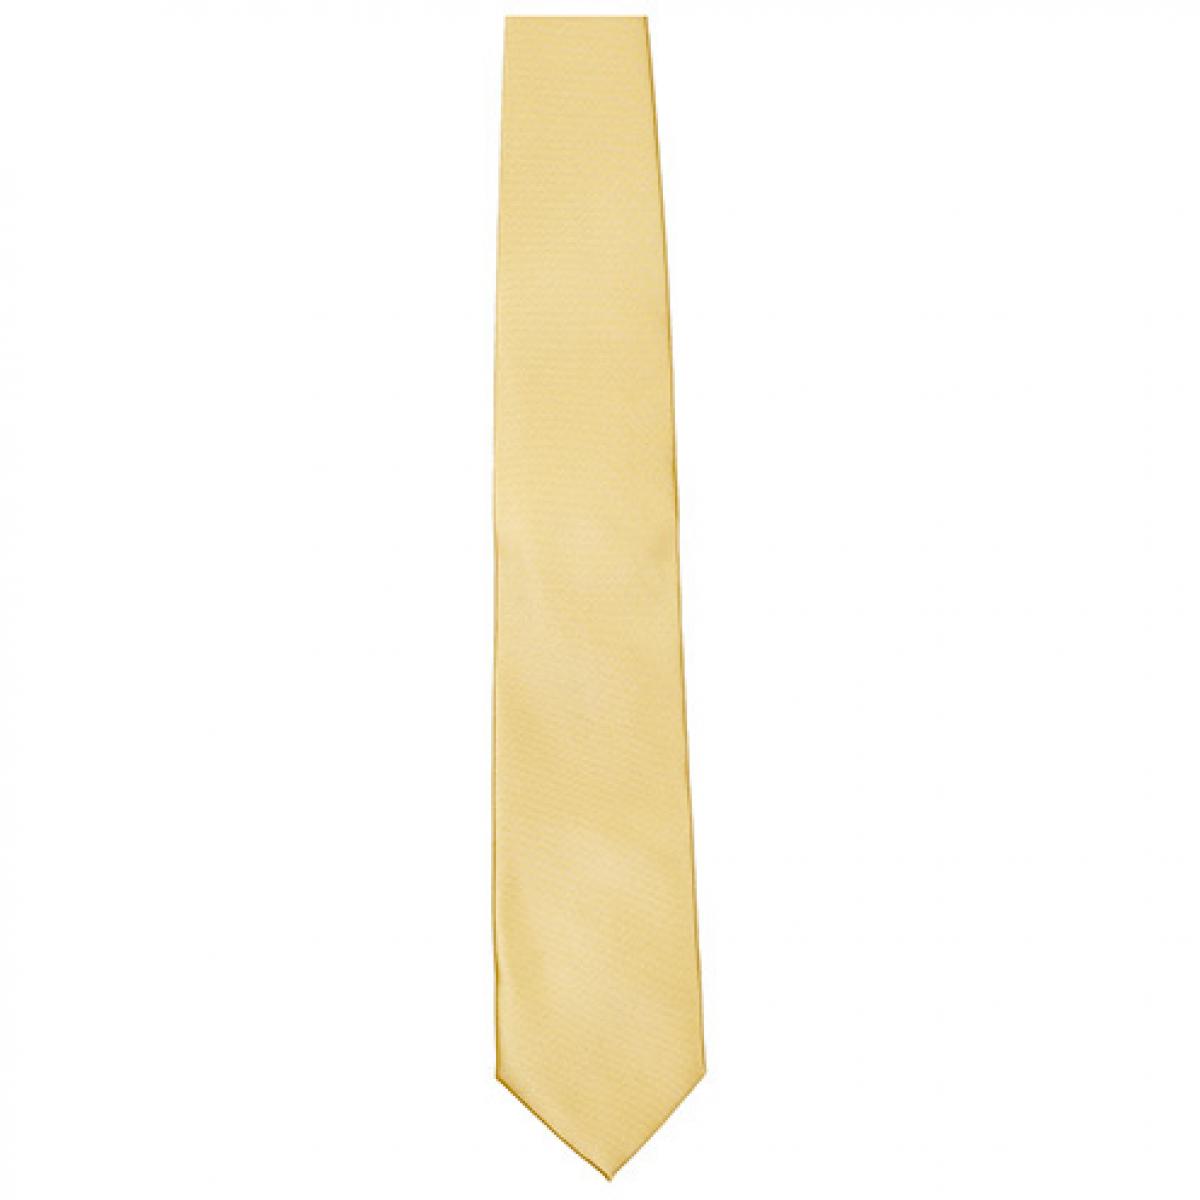 Hersteller: TYTO Herstellernummer: TT901 Artikelbezeichnung: Satin Tie / 144 x 8,5cm /  Zu 100% von Hand genäht Farbe: Gold